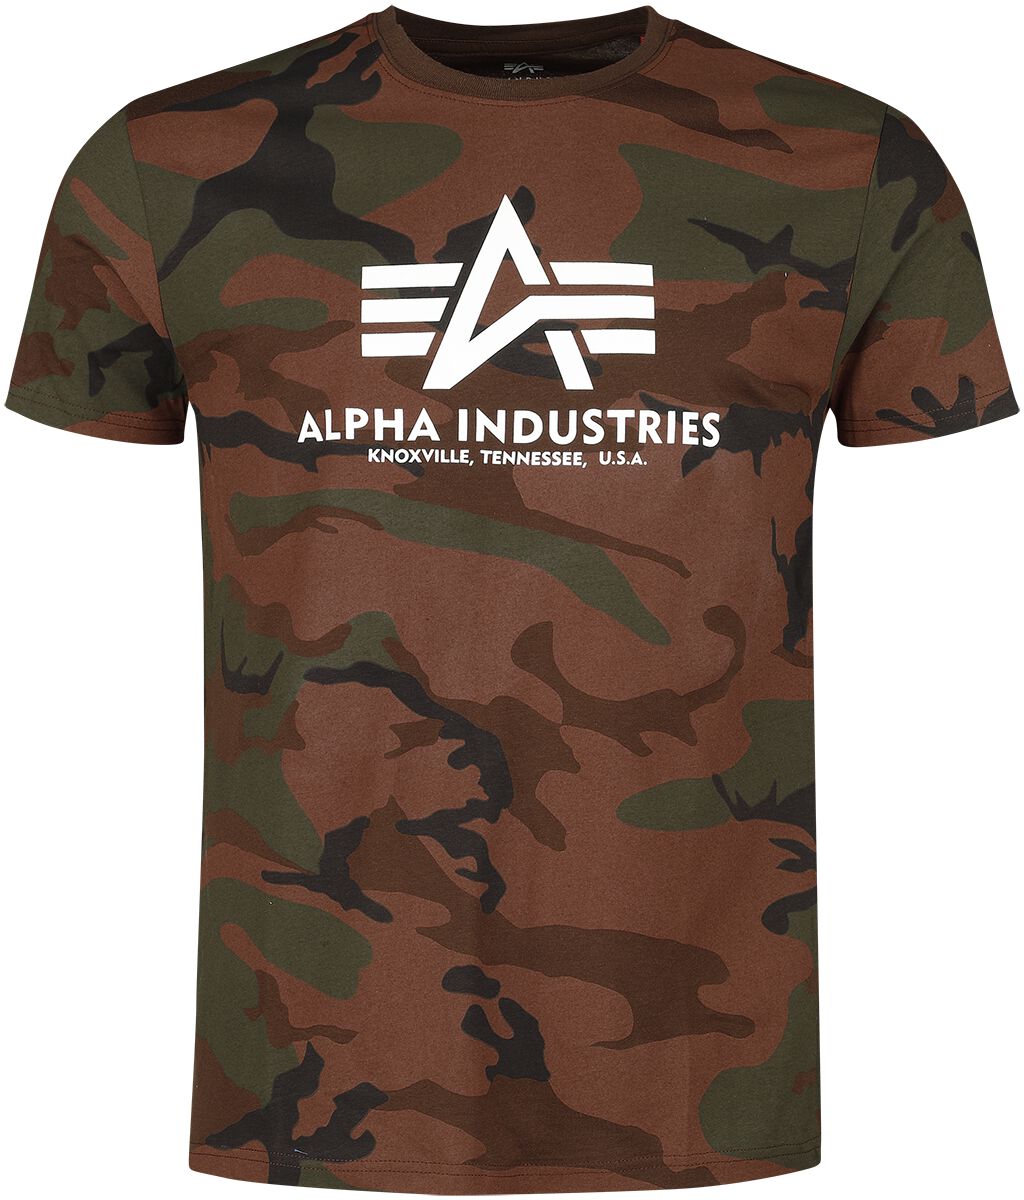 Alpha Industries - Camouflage/Flecktarn T-Shirt - BASIC T CAMO - S - für Männer - Größe S - braun von alpha industries